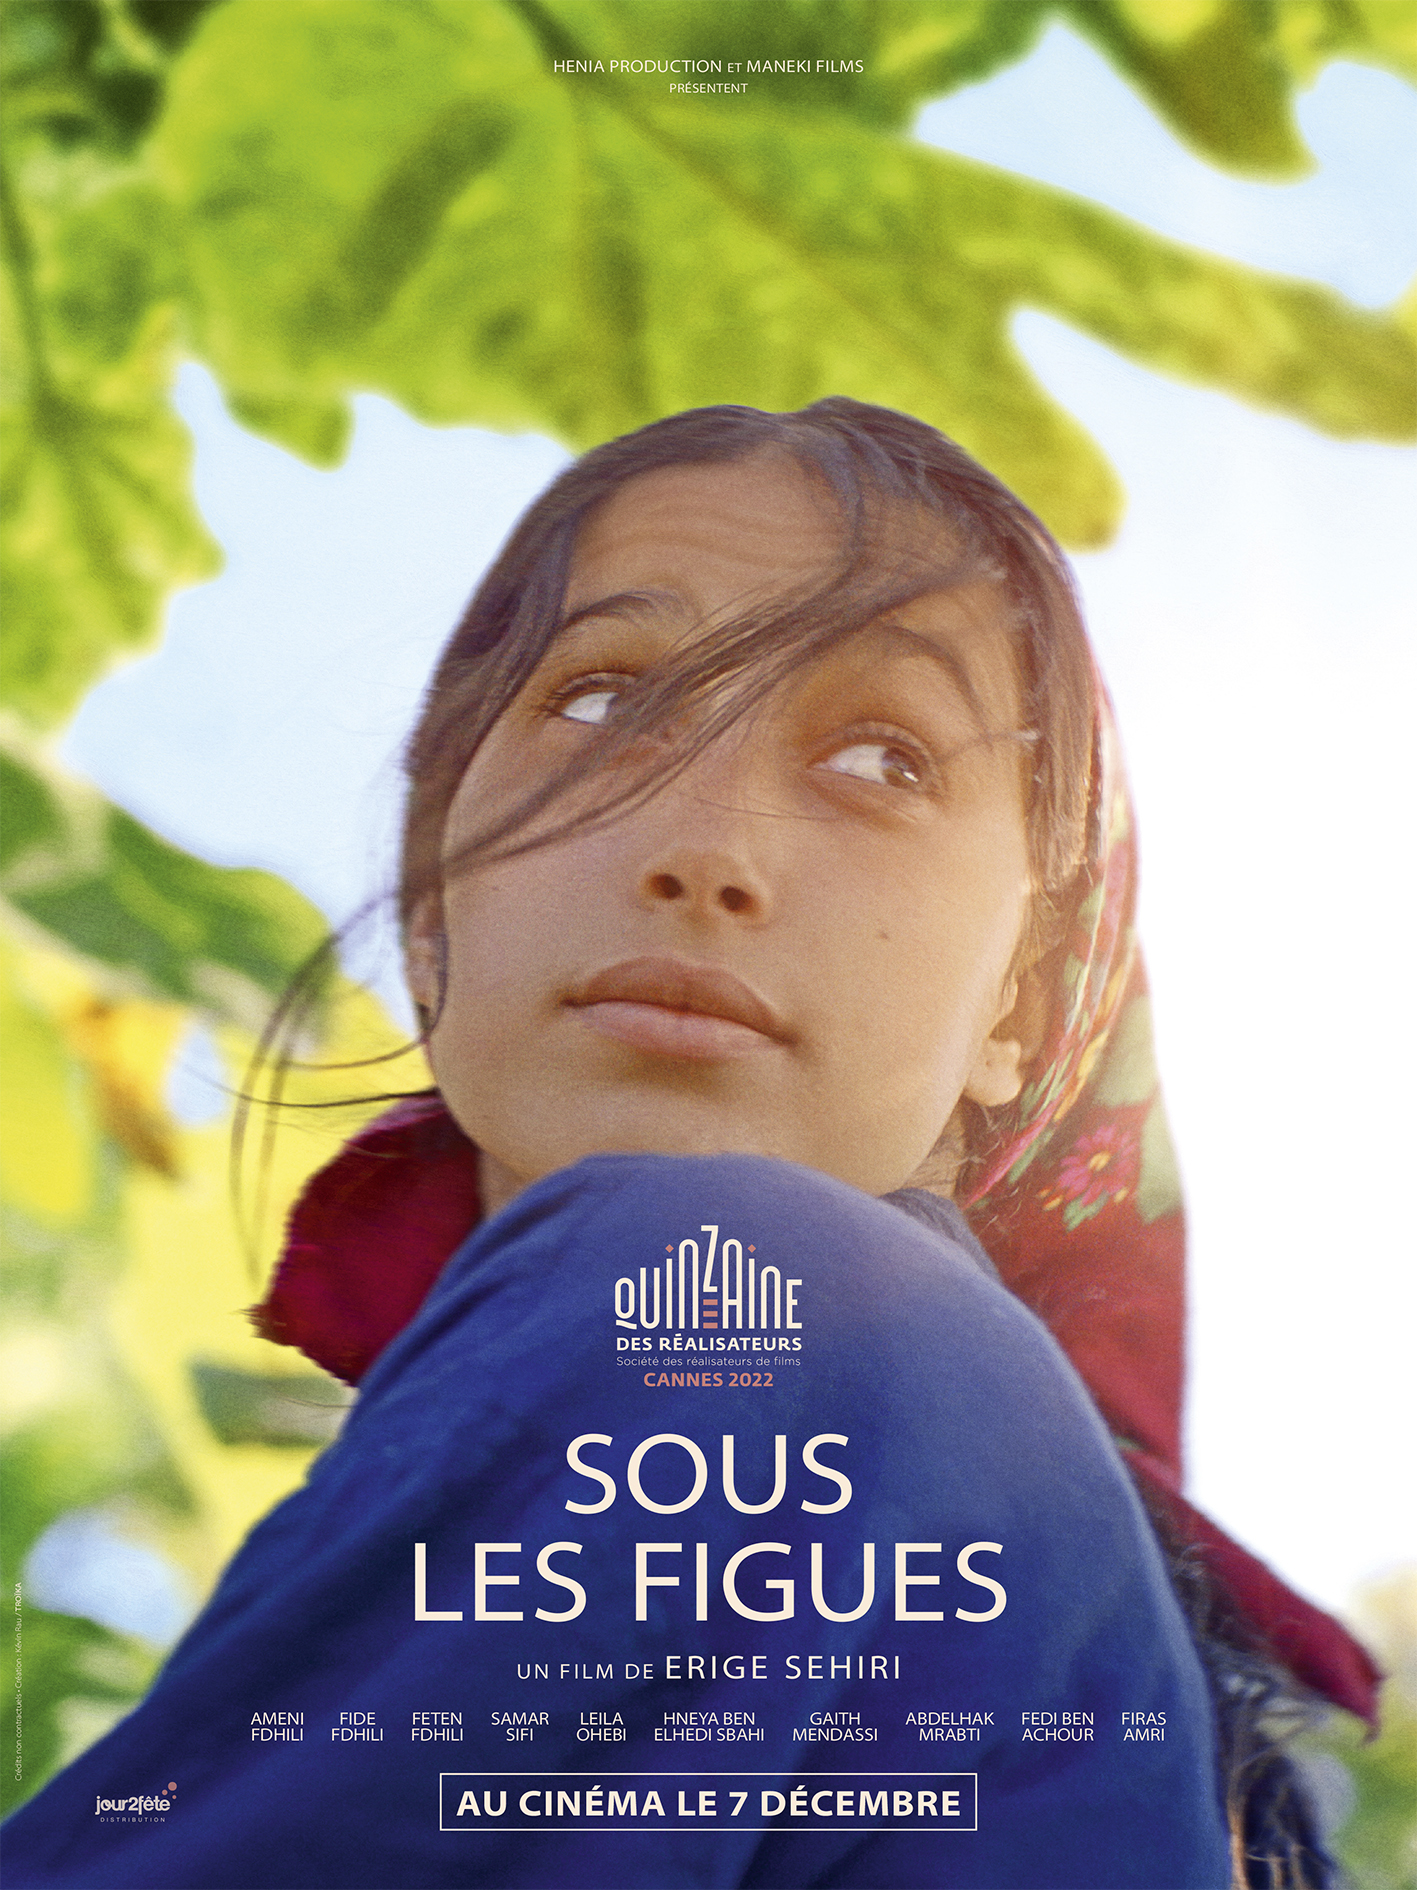 La onzième édition du festival du film franco-arabe (FFFA) de Noisy-le-Sec aura lieu du 18 novembre au 1er décembre 2022